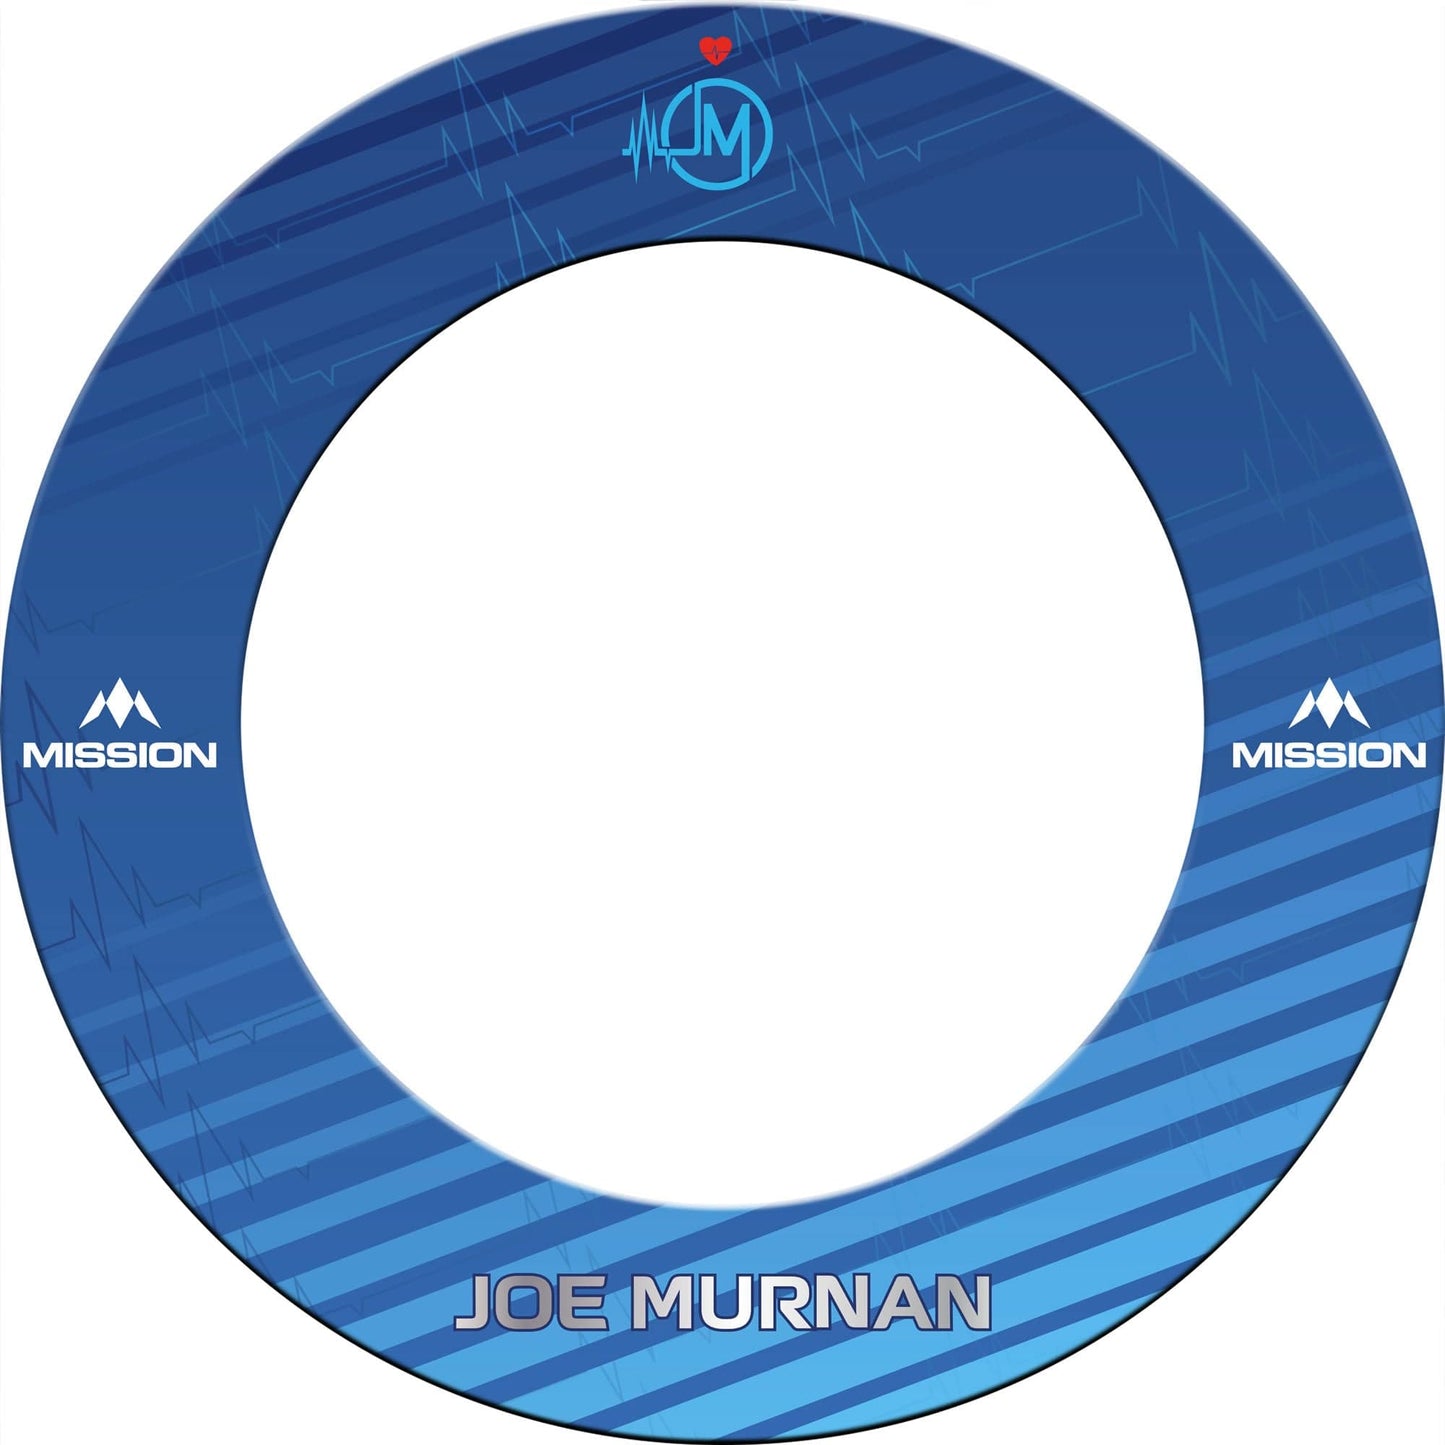 Mission Player Dartboard Surround - Joe Murnan